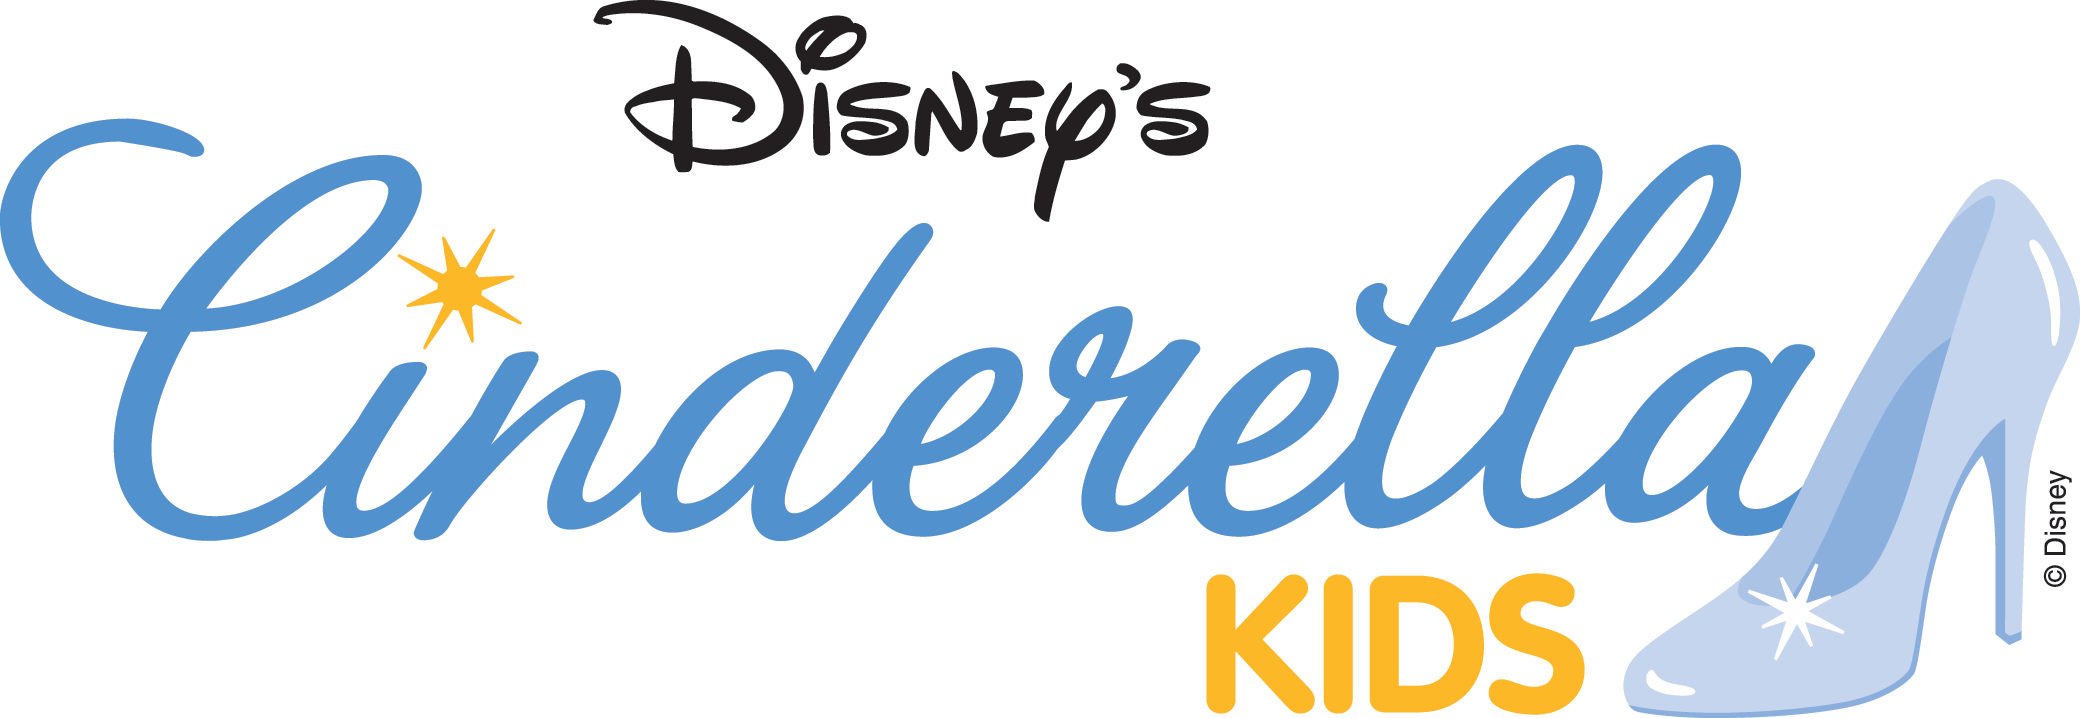 cinderella_Kids_logo